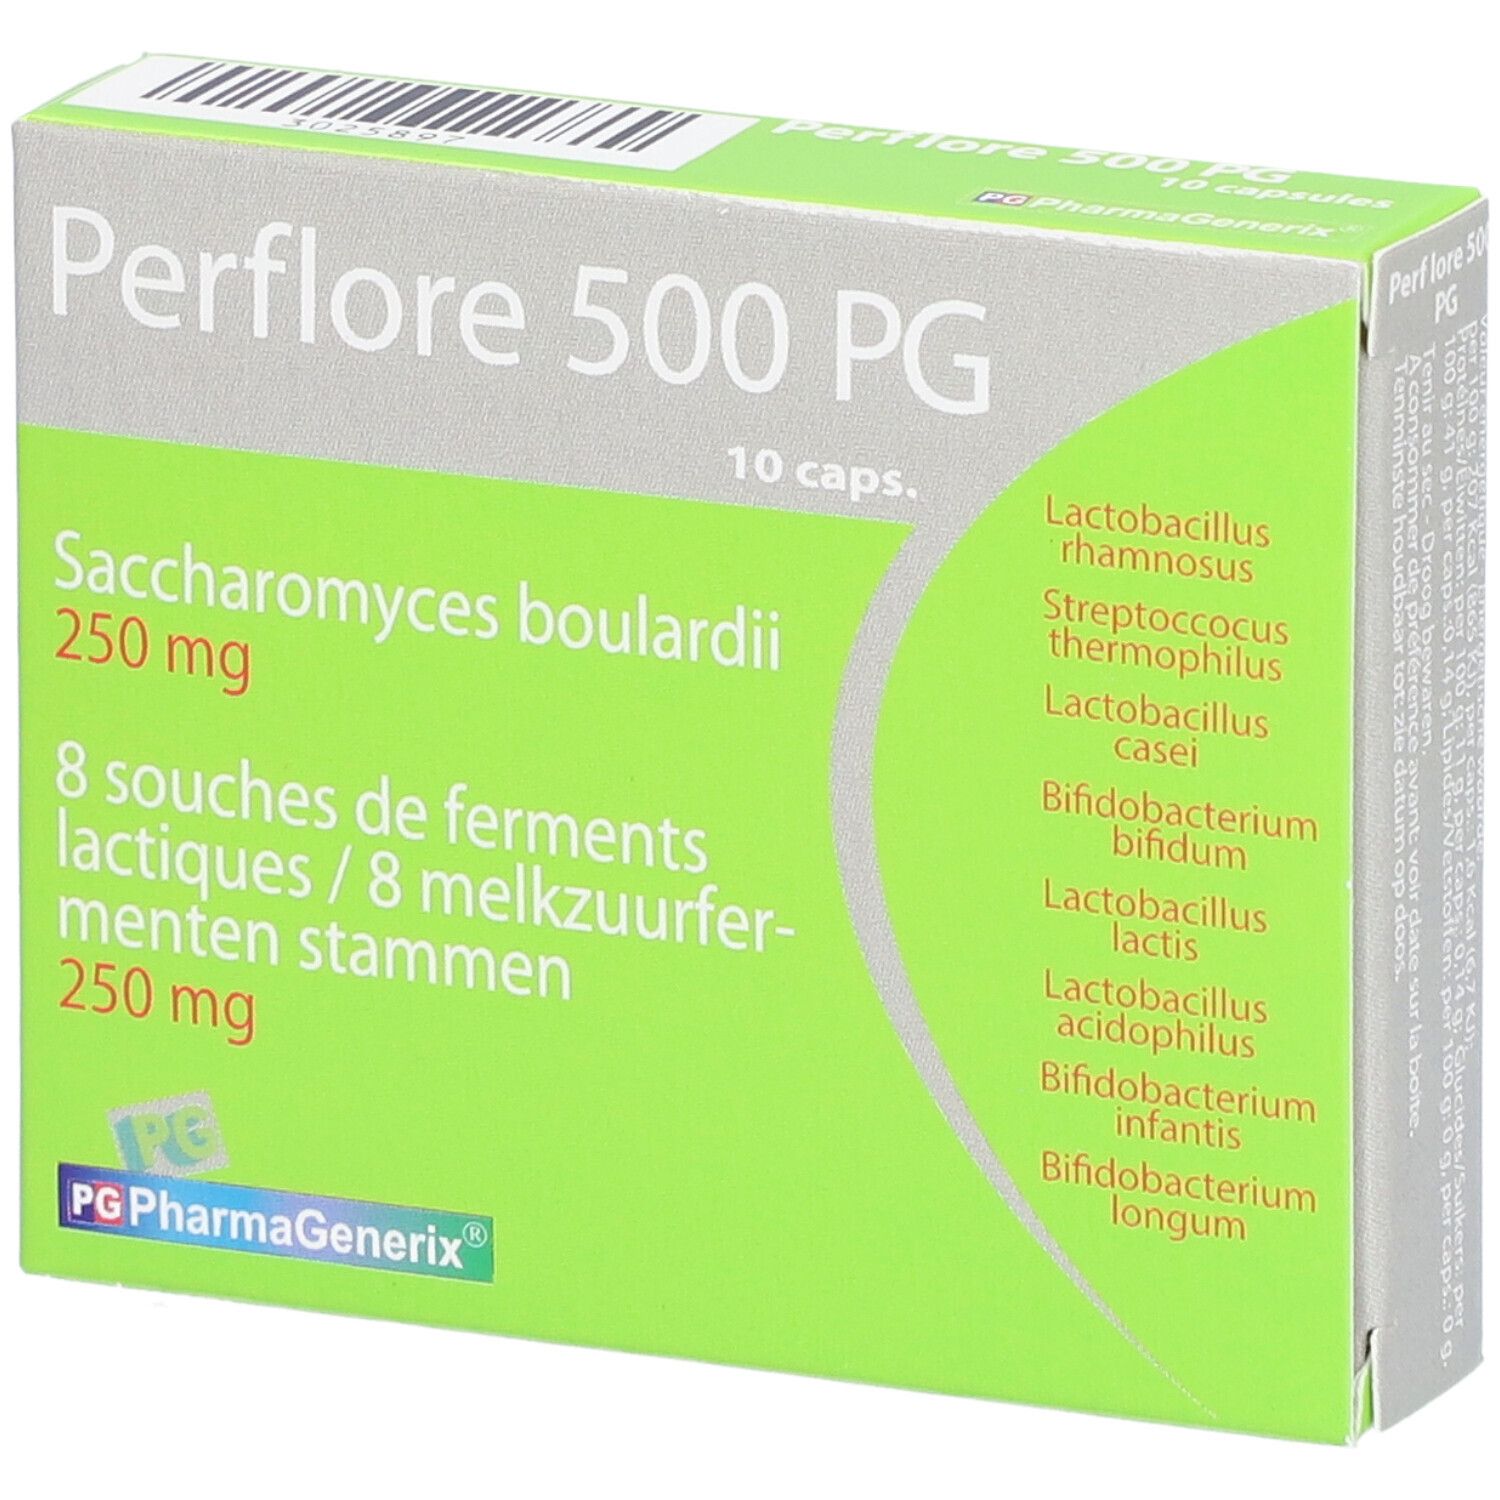 Image of Pharmagenerix Perflore 500 PG